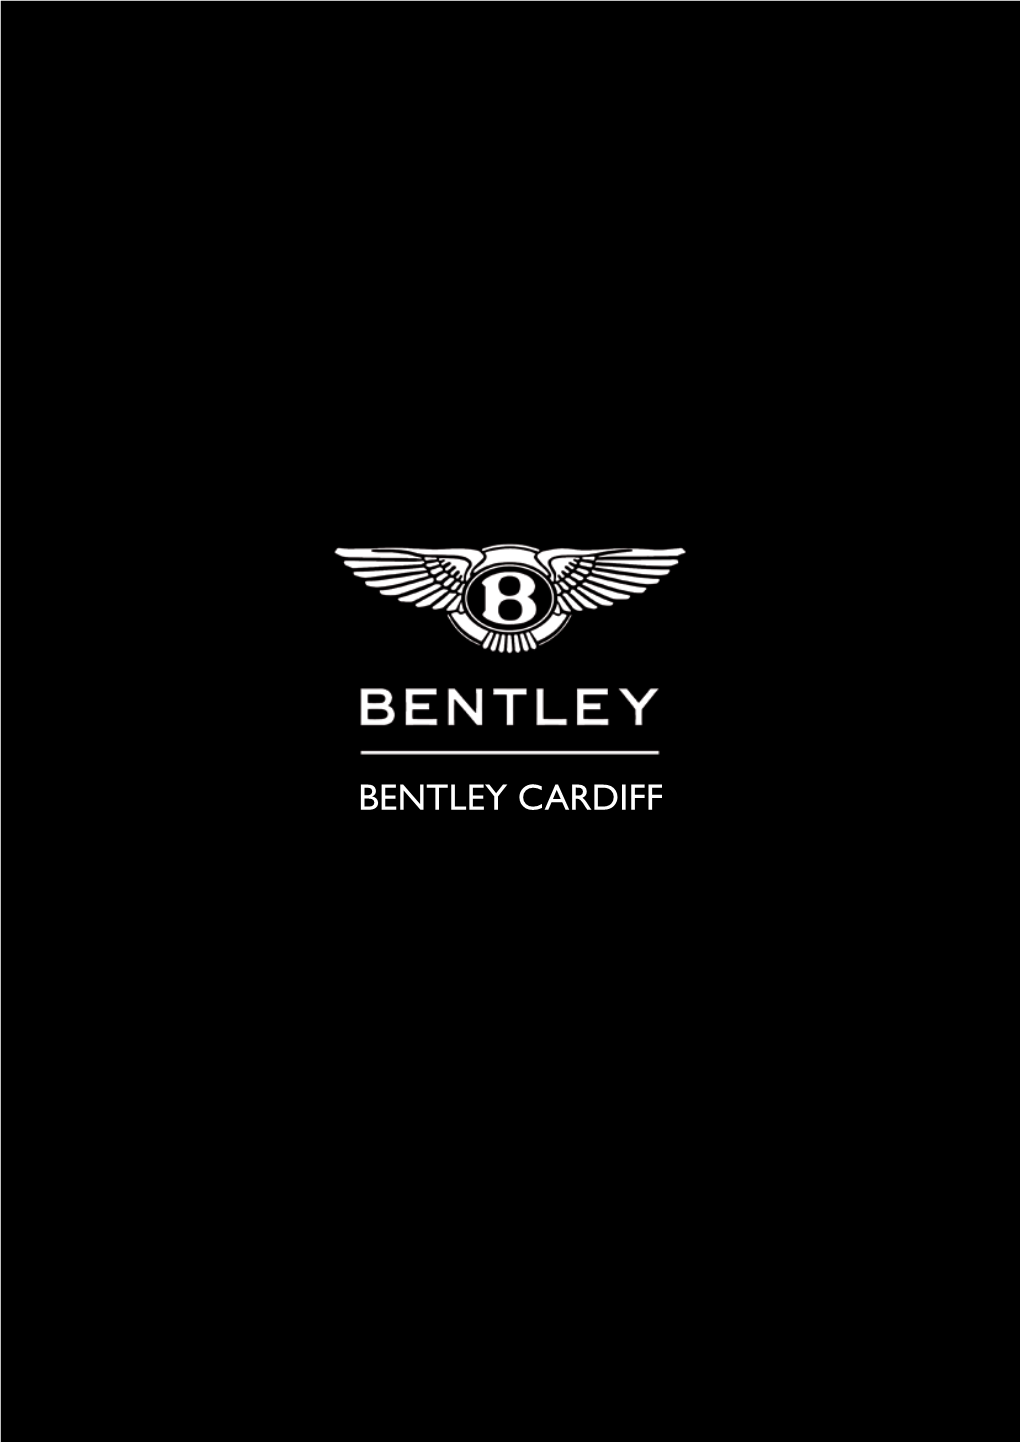 Bentley Cardiff